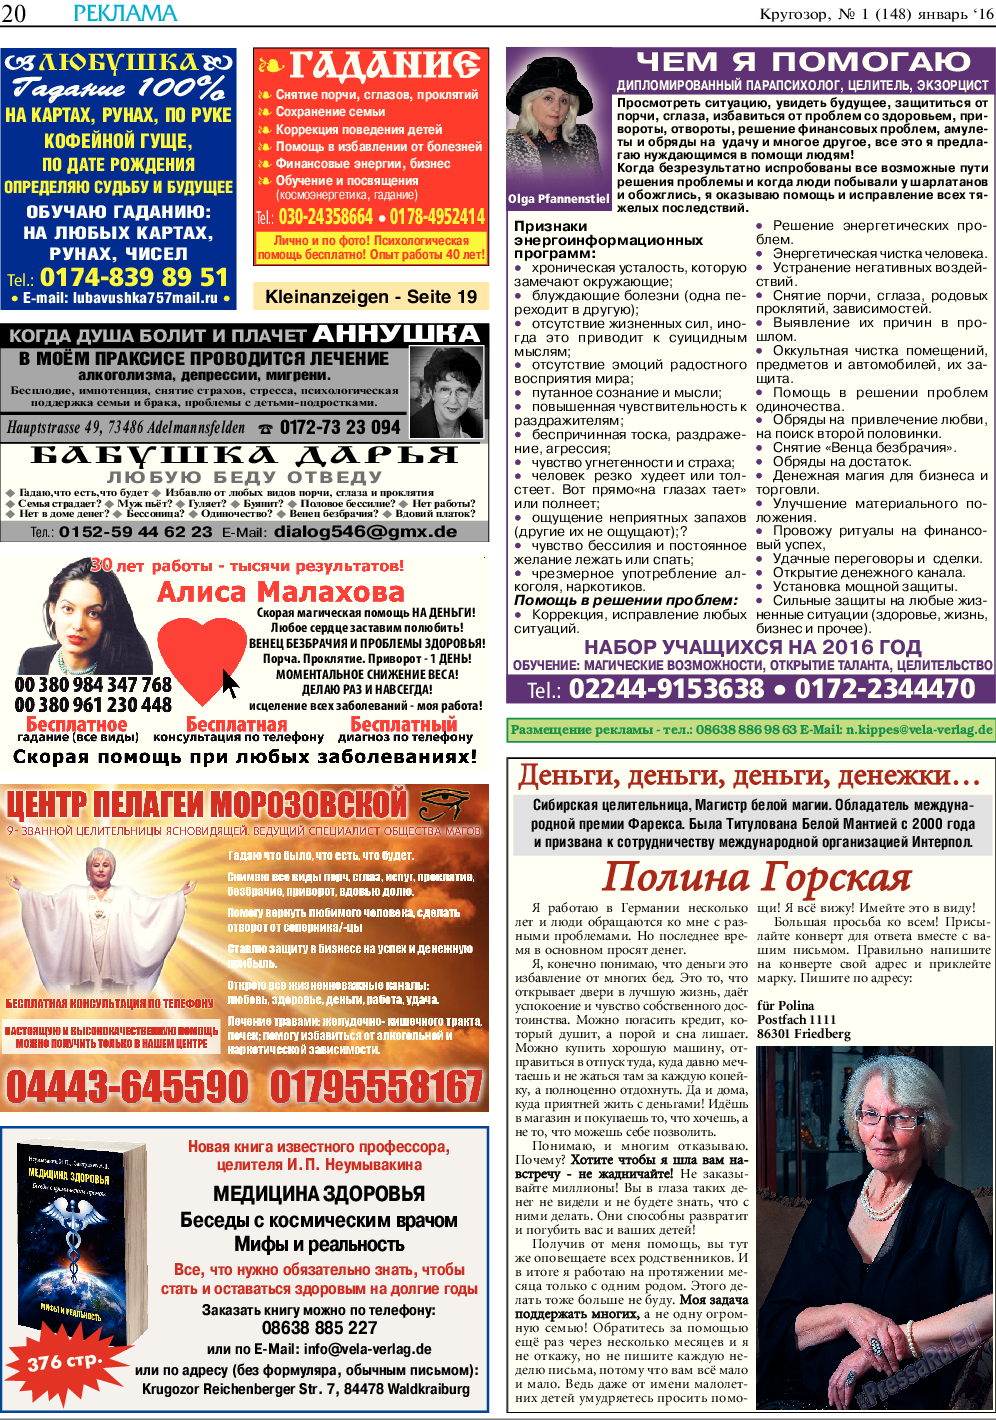 Кругозор, газета. 2016 №1 стр.20